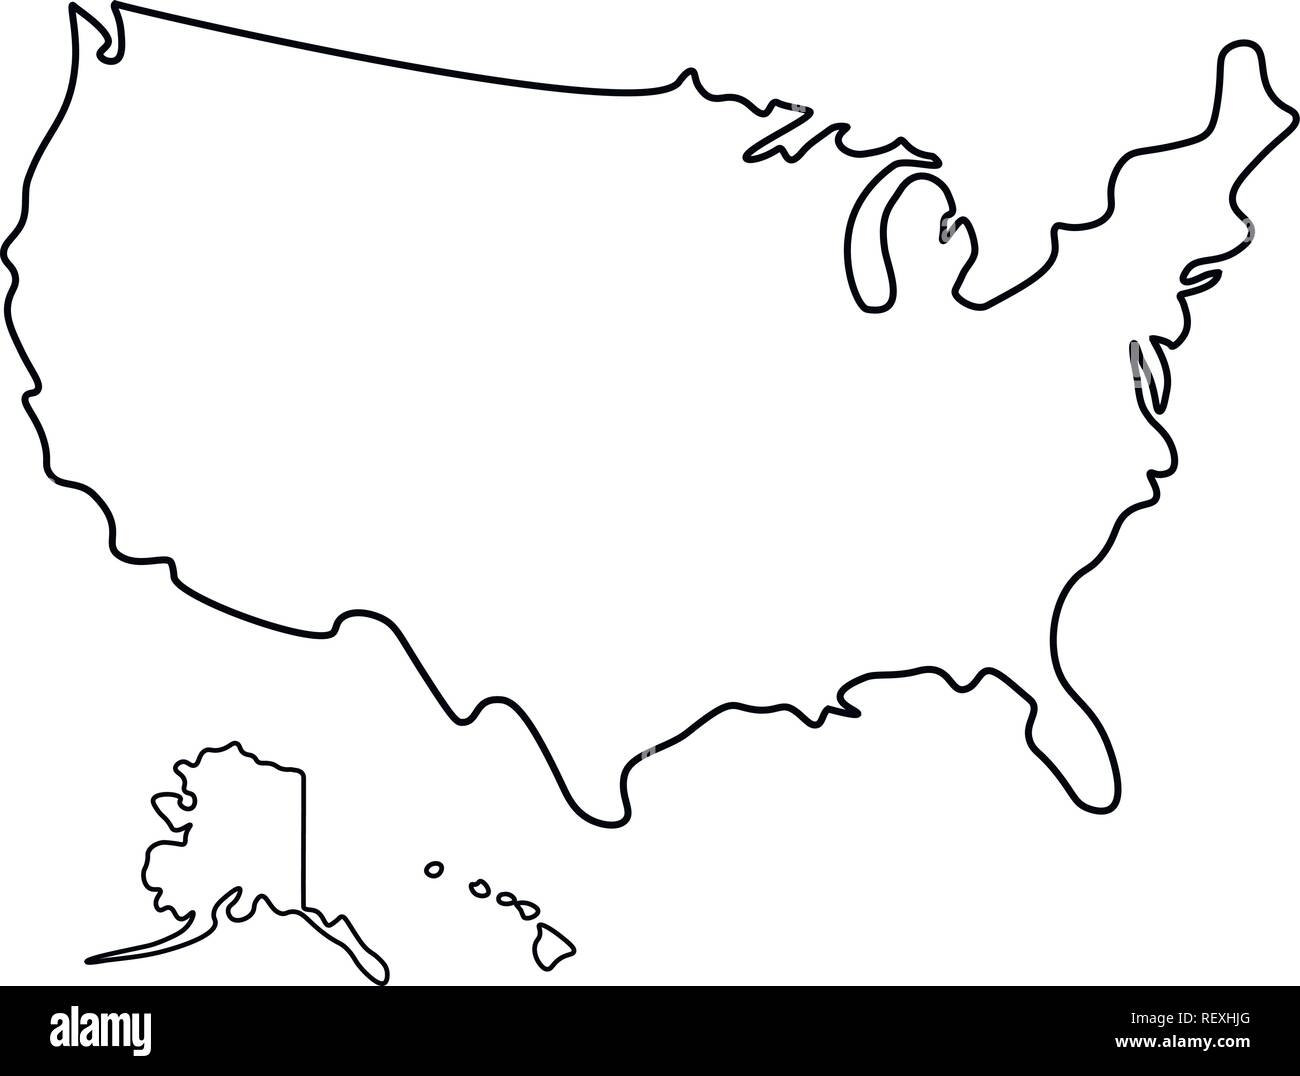 Mappa di Stati Uniti d'America - contorno. Silhouette mappa degli Stati Uniti d'America illustrazione vettoriale Illustrazione Vettoriale